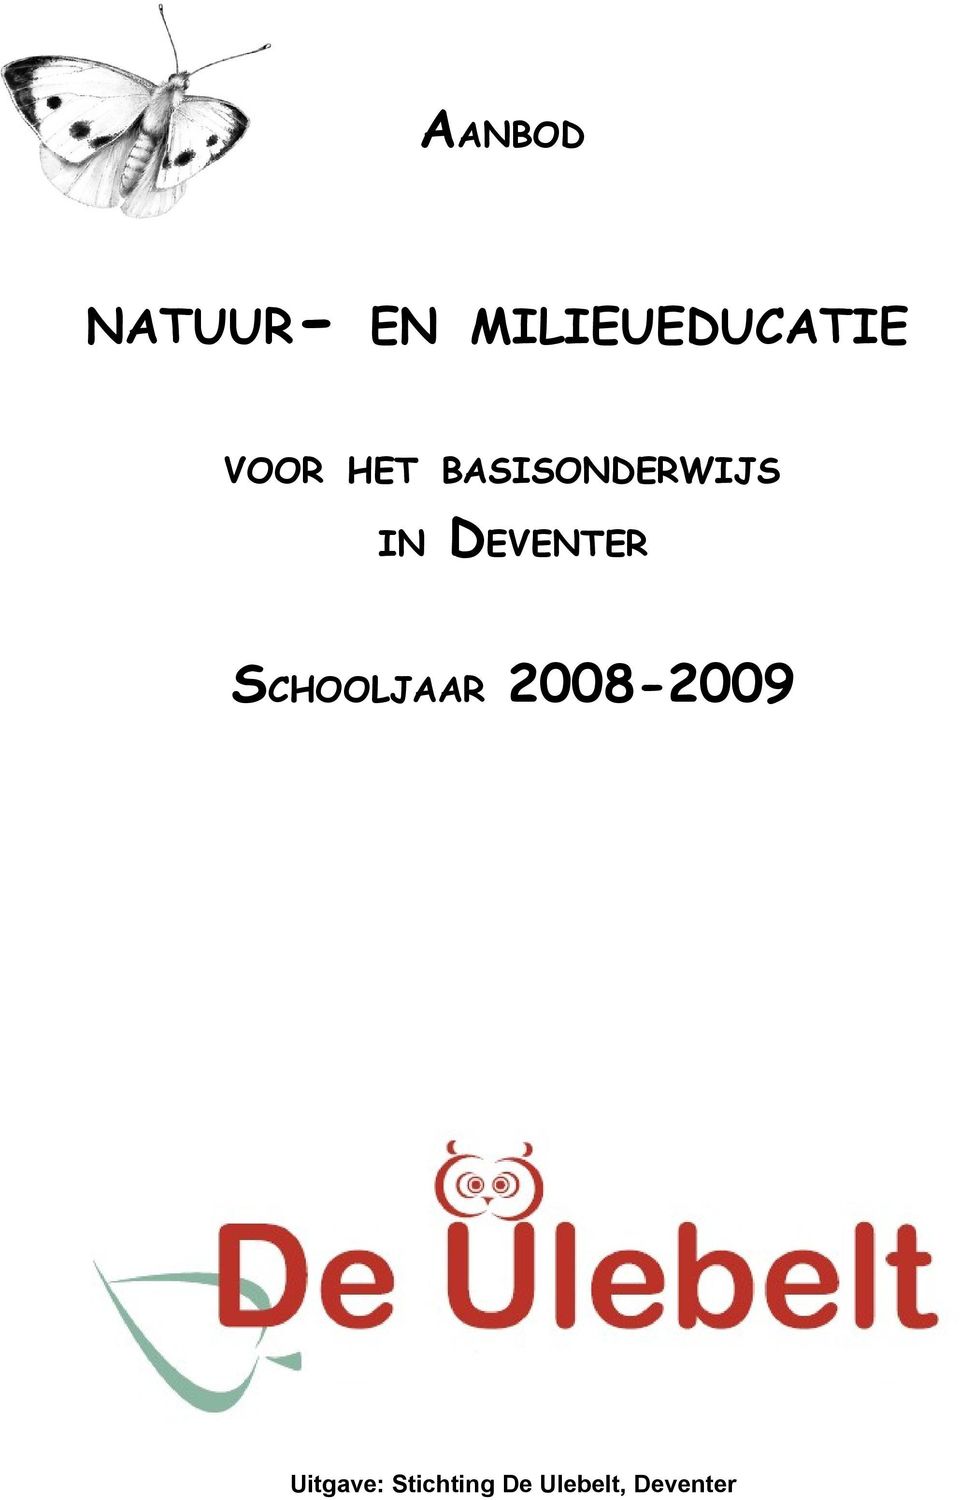 DEVENTER SCHOOLJAAR 2008-2009